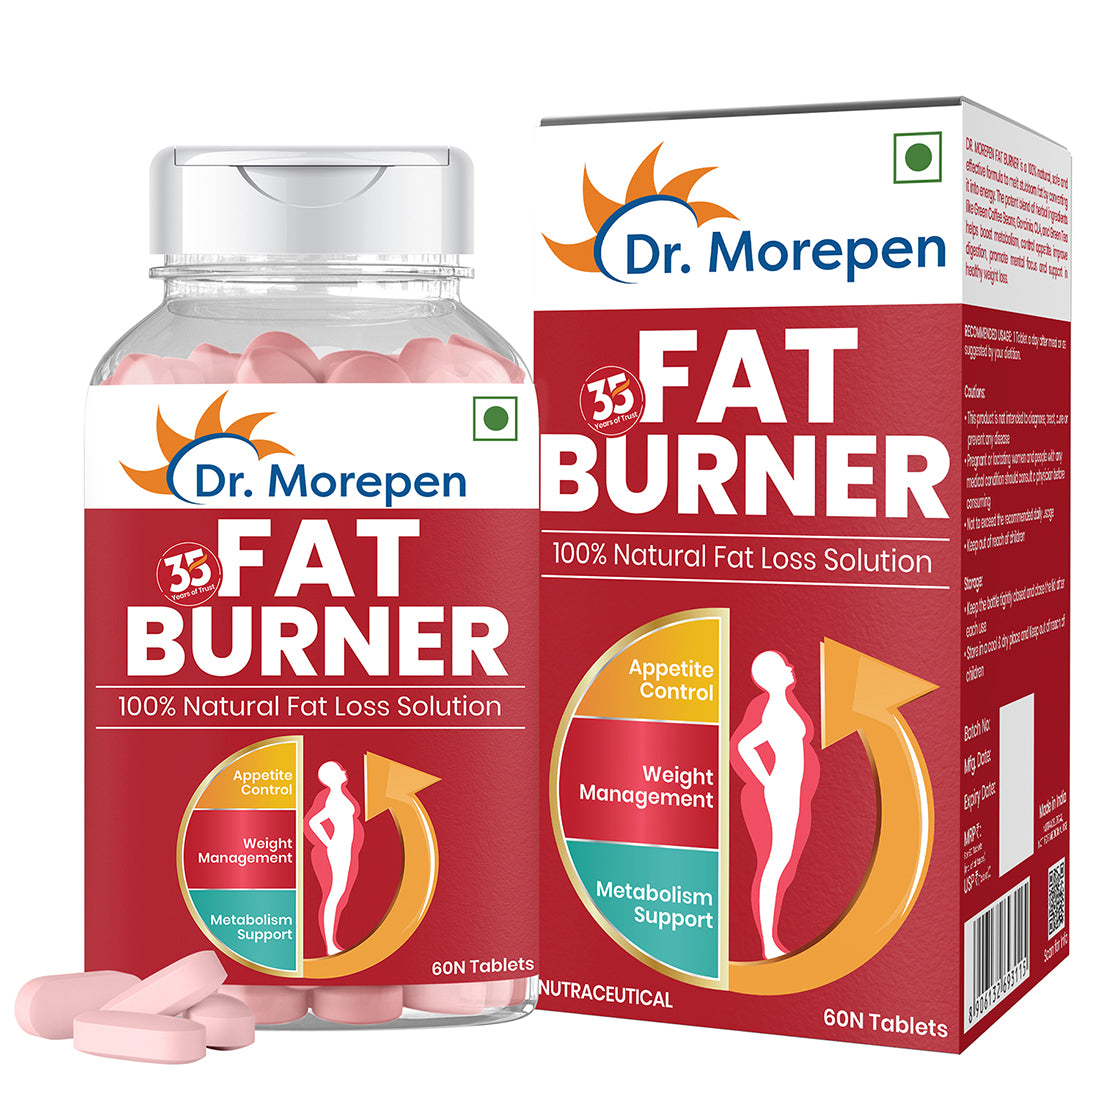 Dr. Morepen Fat Burner Tablets - Distacart